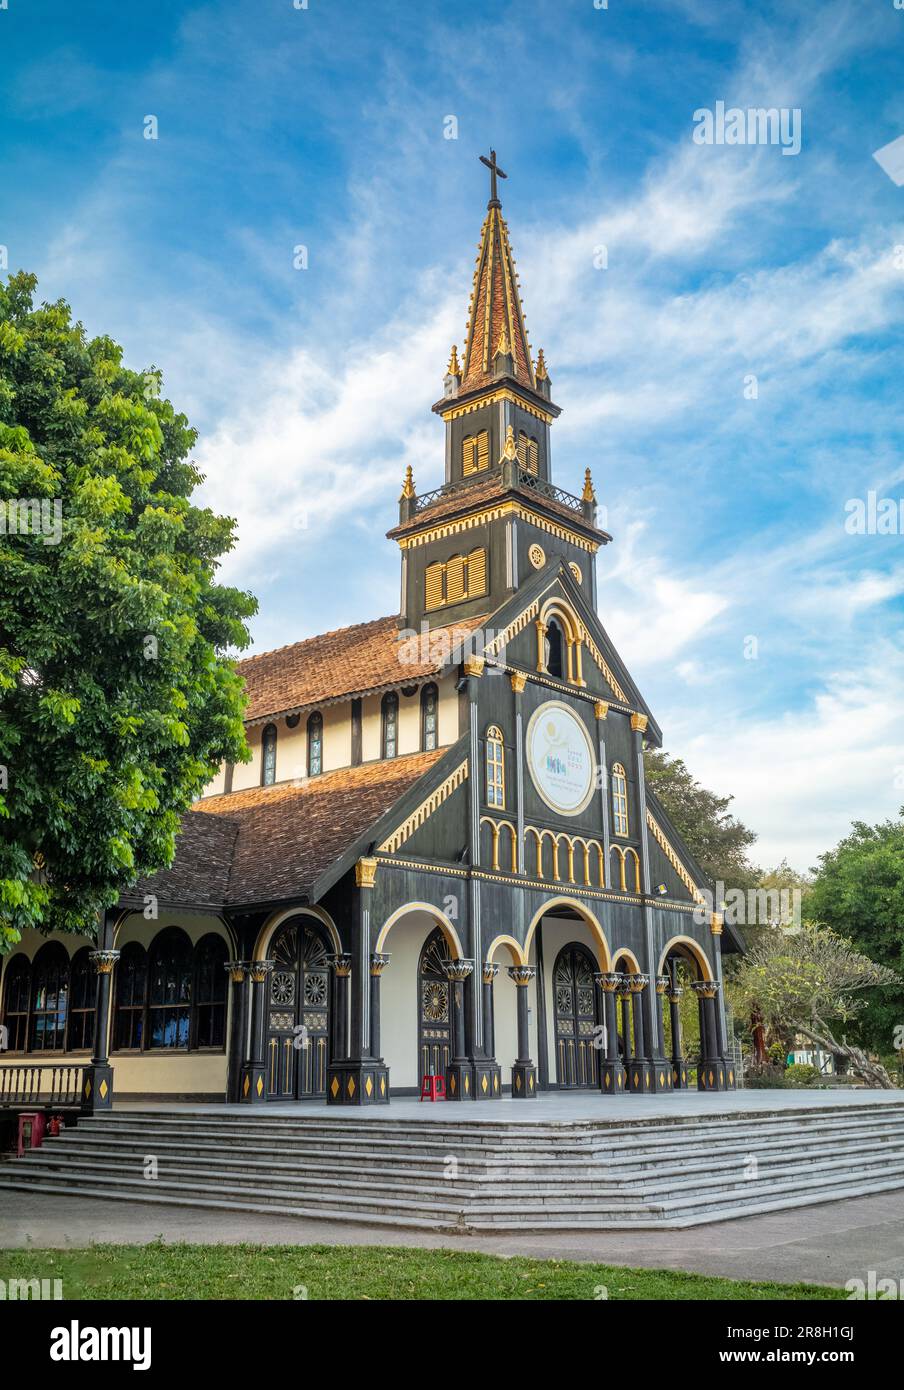 La famosa chiesa in legno, o la cattedrale cattolica di Kontum, nella città di Kontum, nelle Highlands centrali del Vietnam. La chiesa fu costruita da un francese Foto Stock